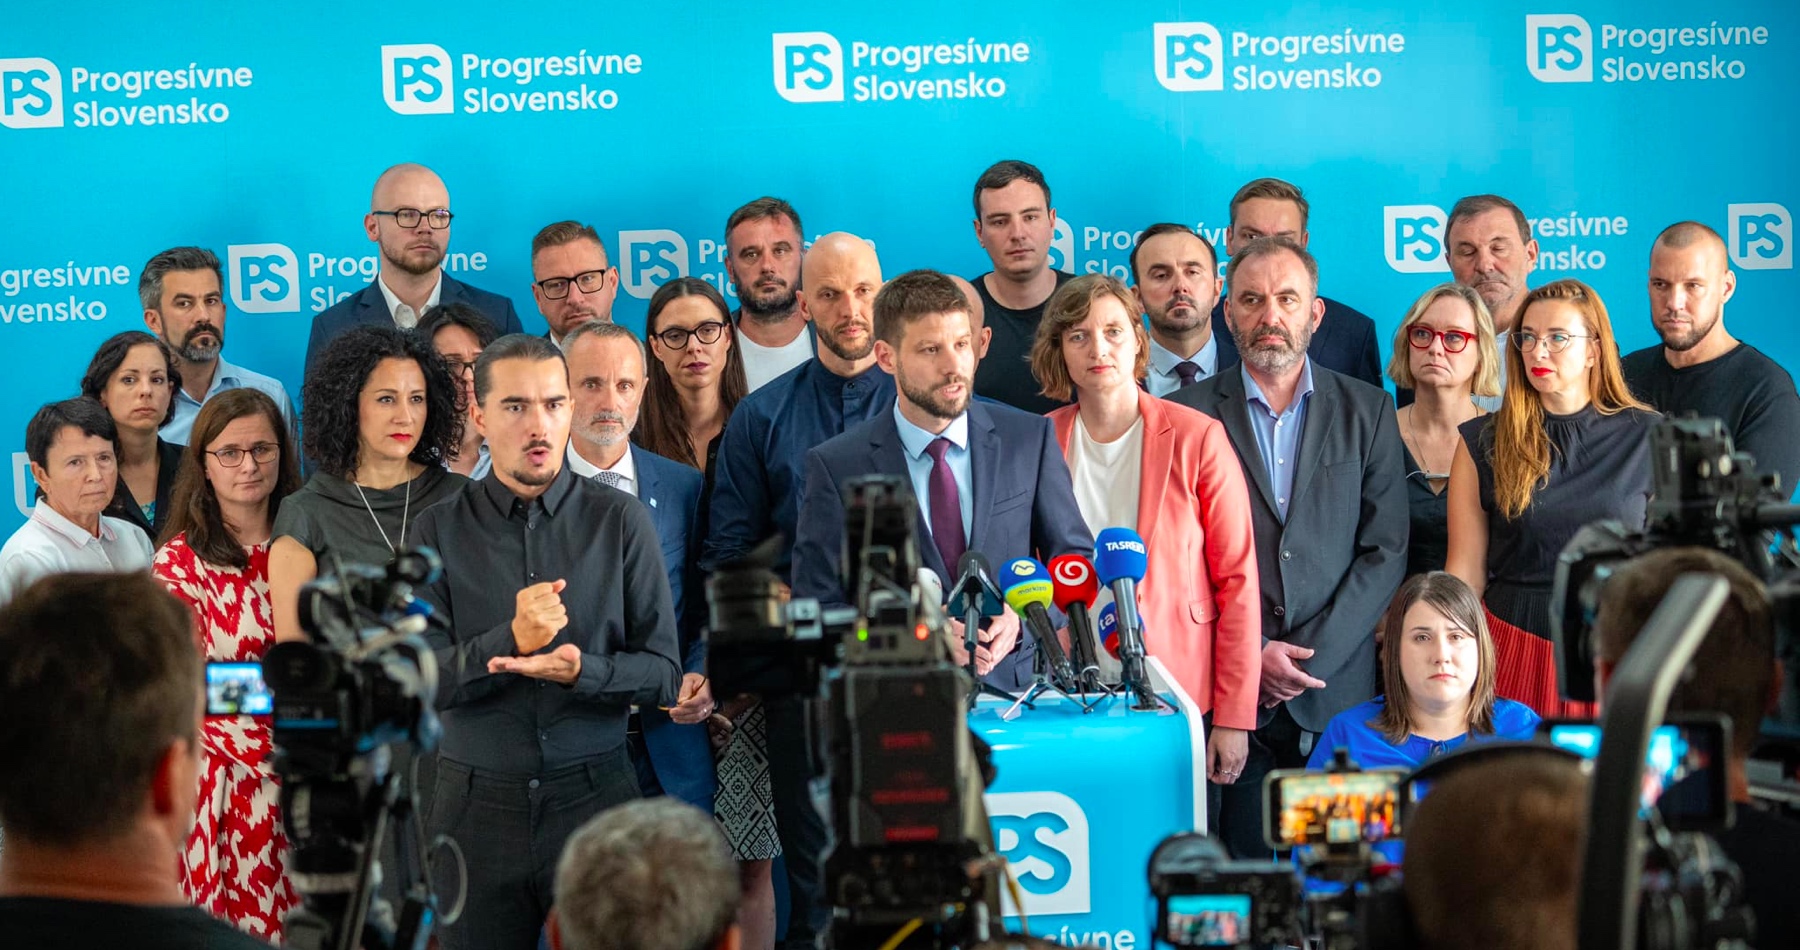 Ako agentúry vylúčením pätiny voličov nahrávajú v prieskumoch Progresívnemu Slovensku